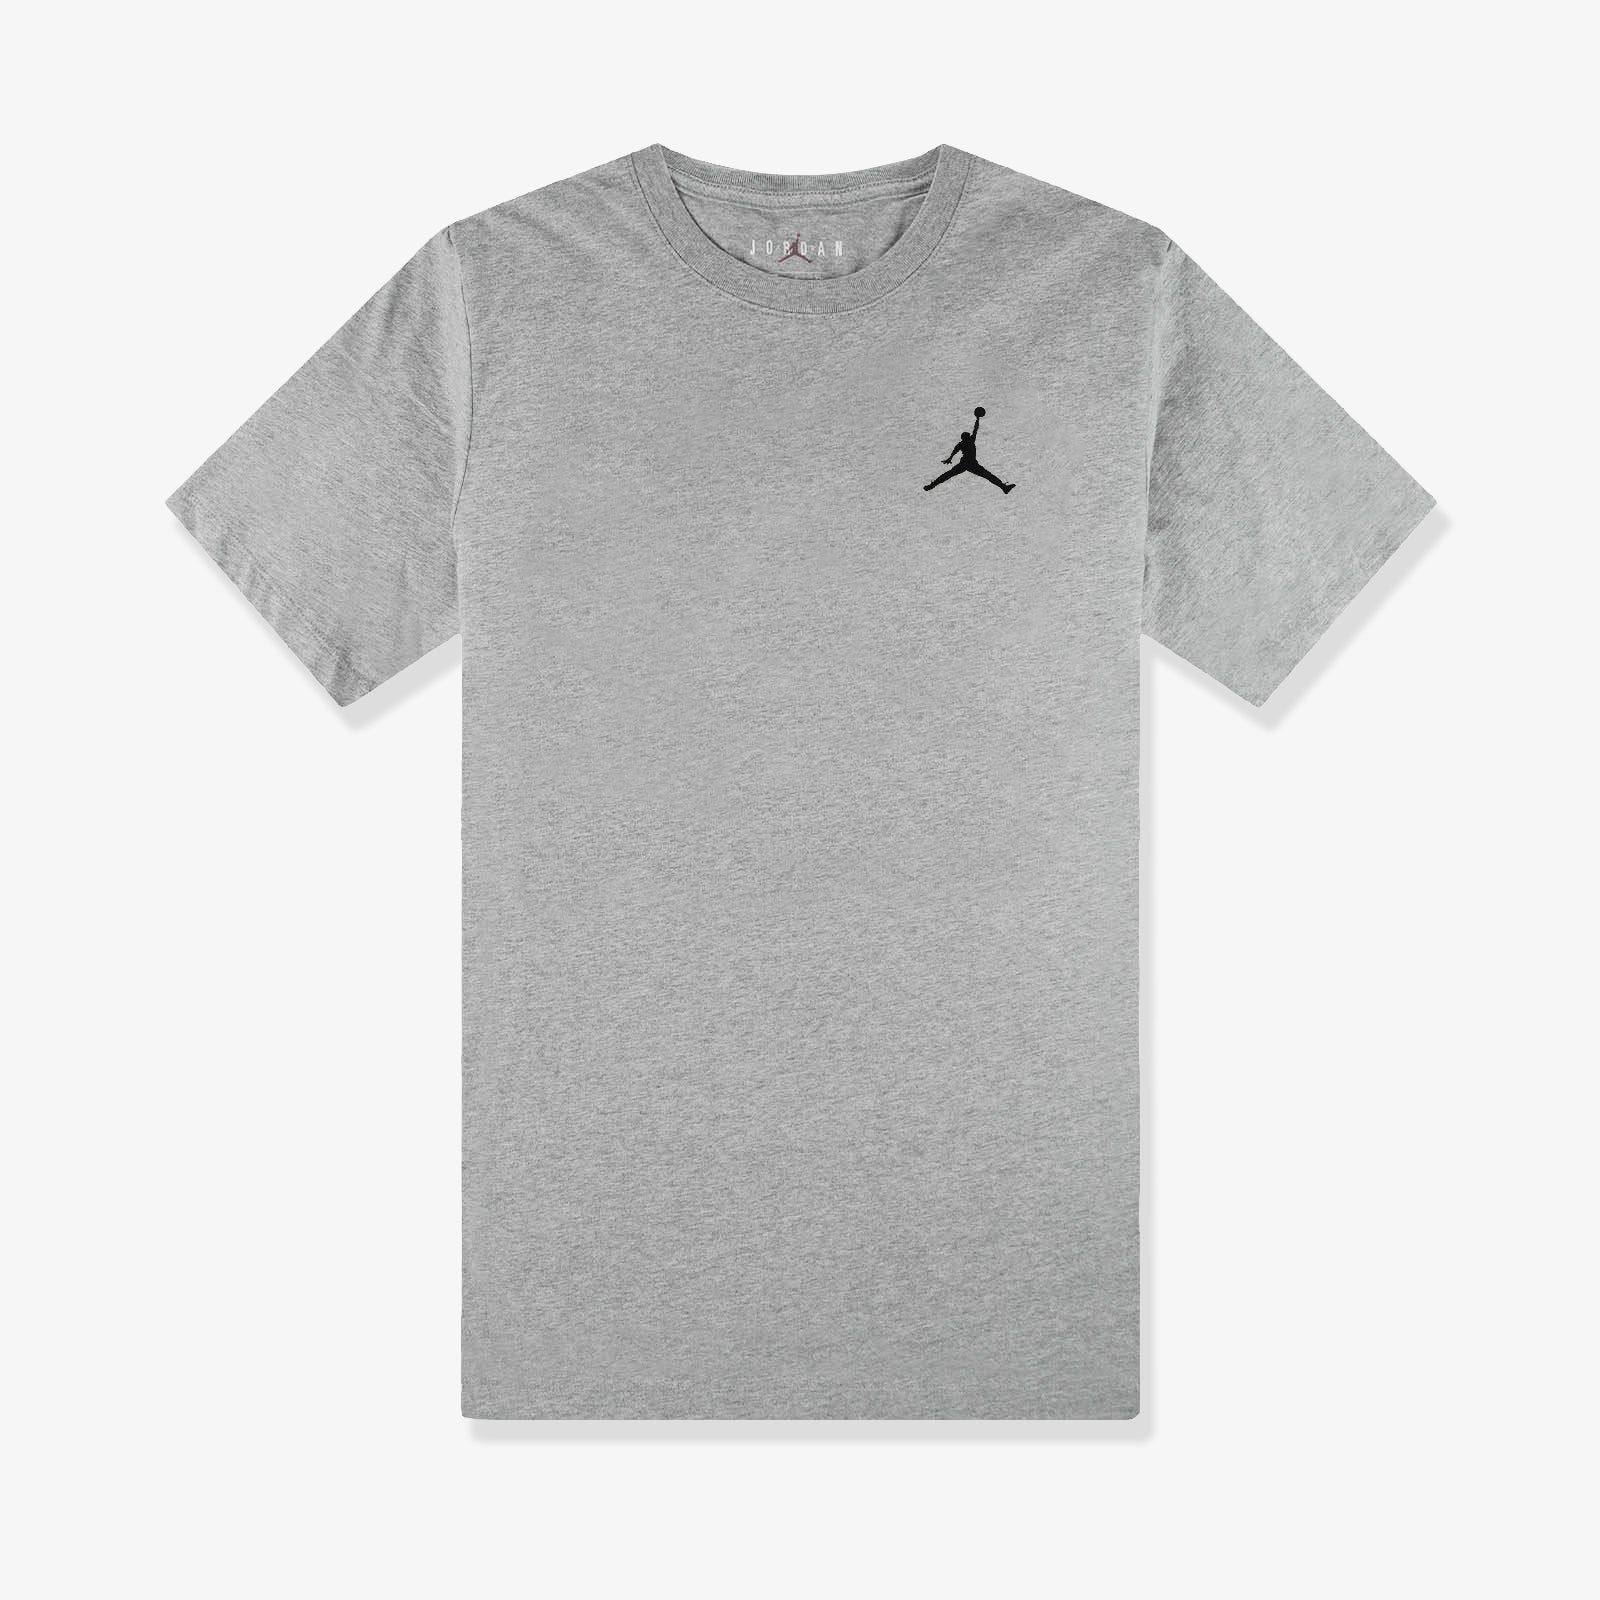 gray jordan t shirt